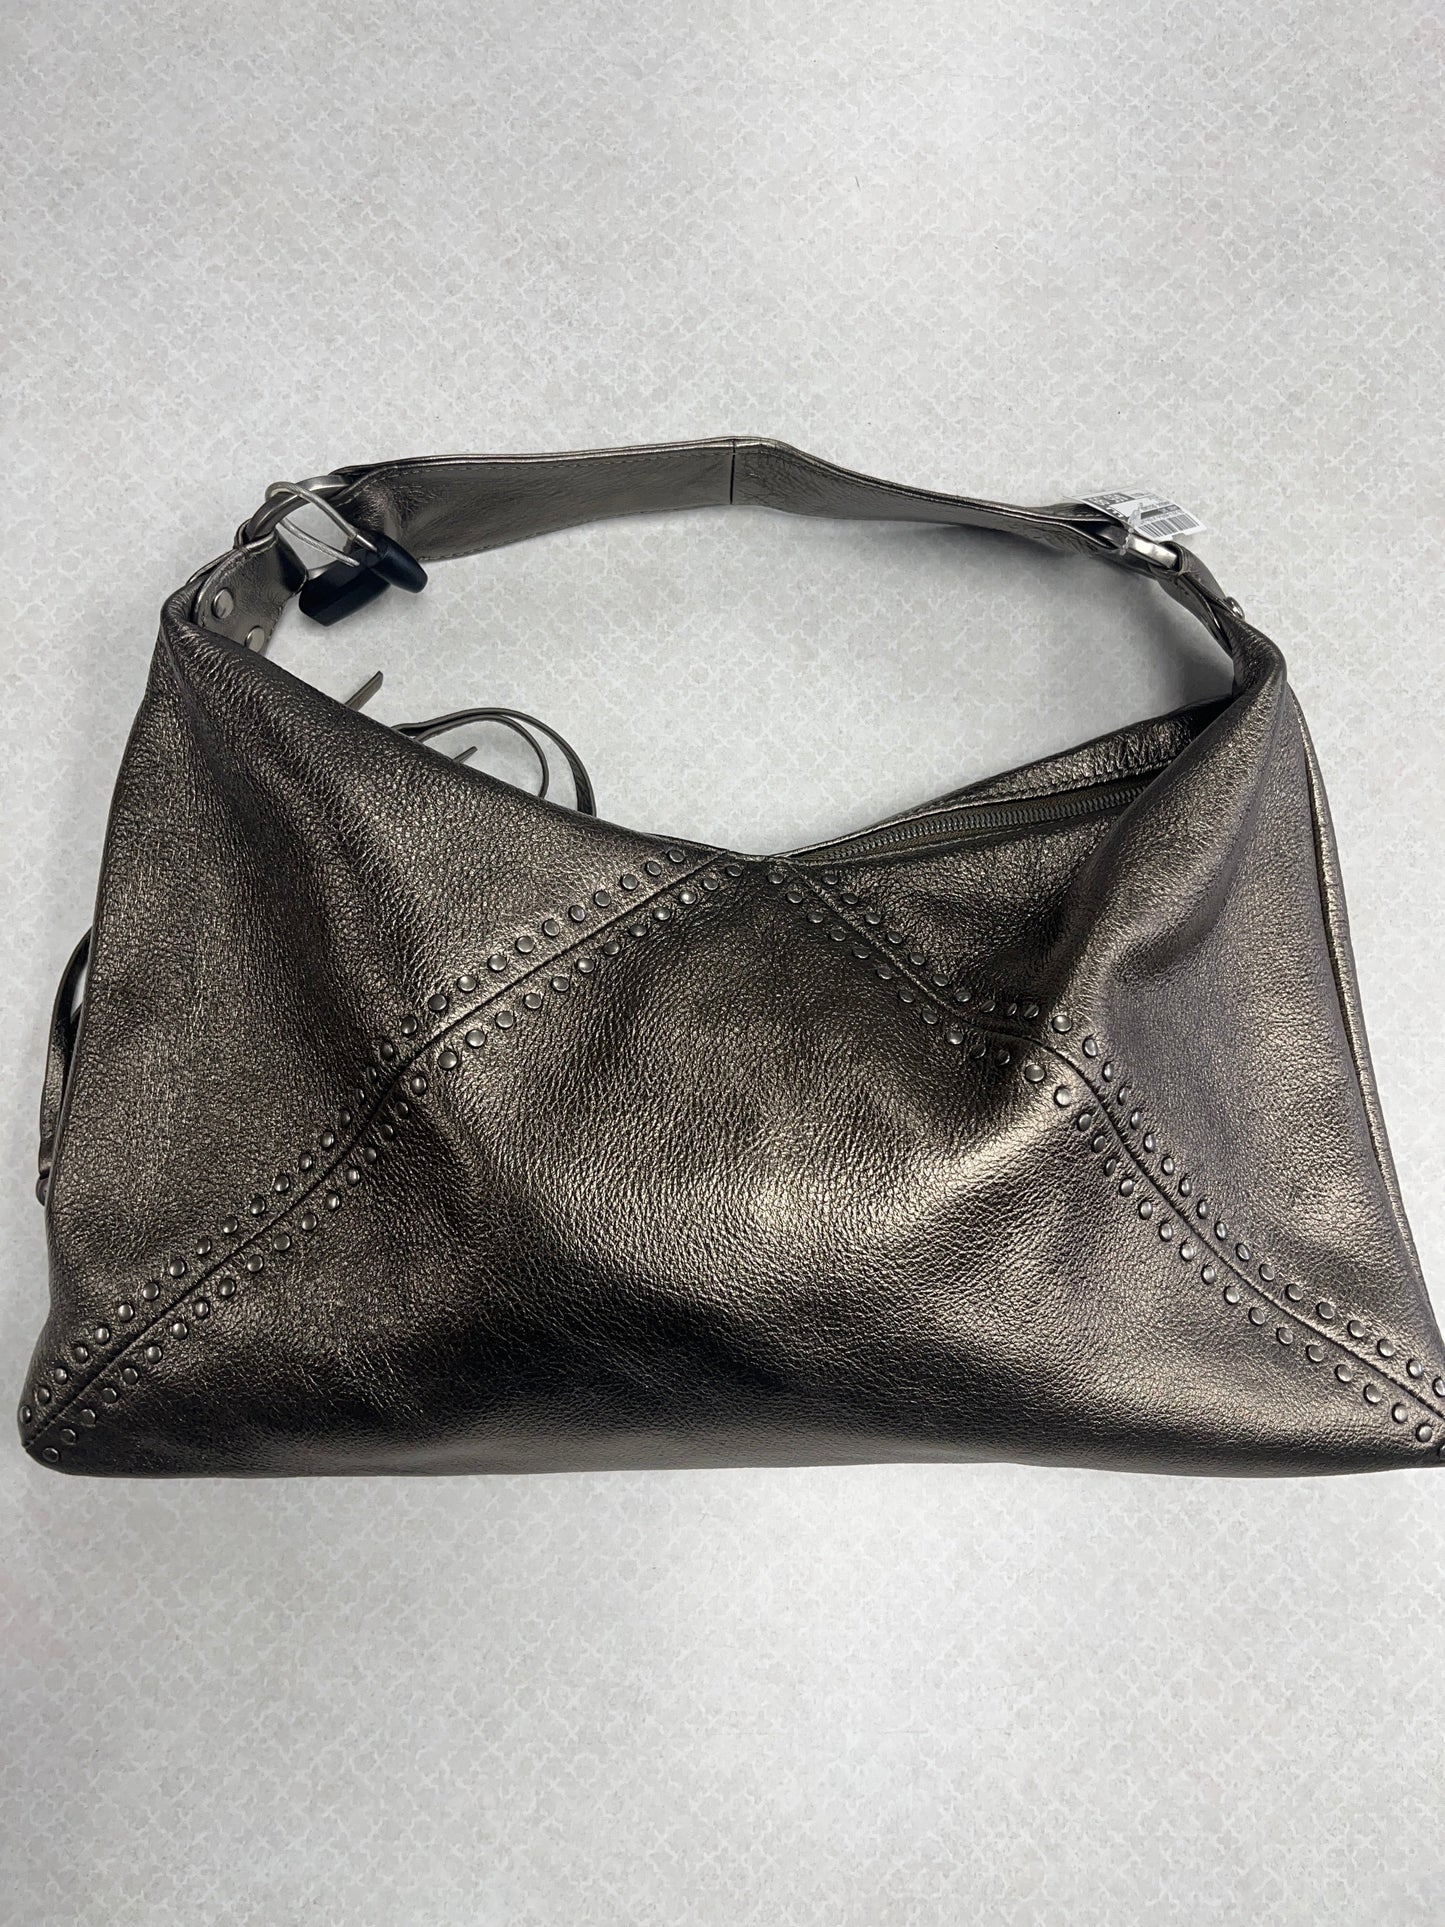 Gold Handbag Designer Hobo Intl, Size Medium